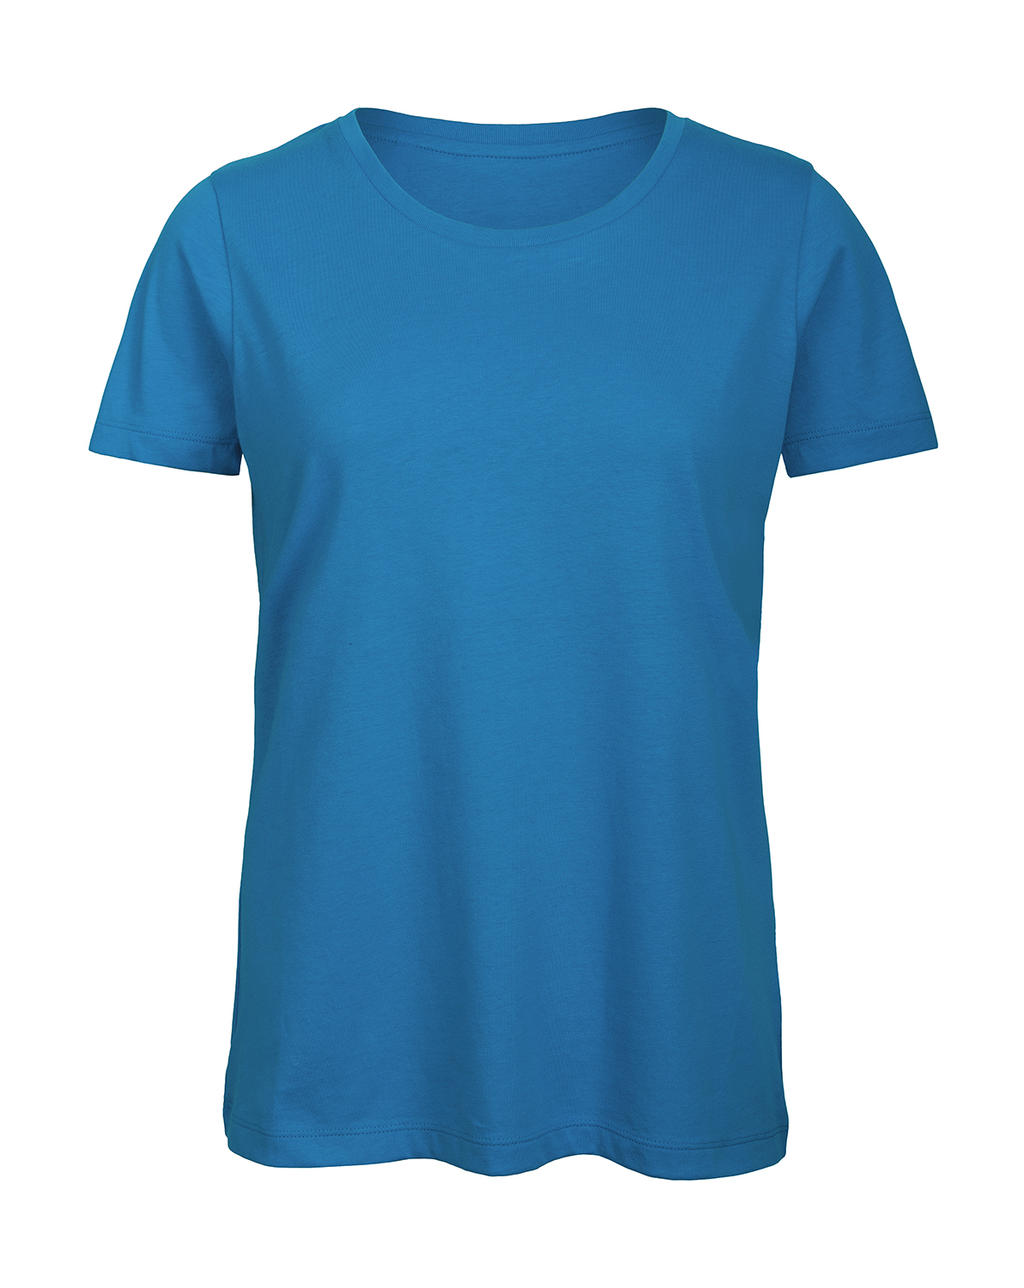 Tričko dámské B&C Jersey - světle modré, L